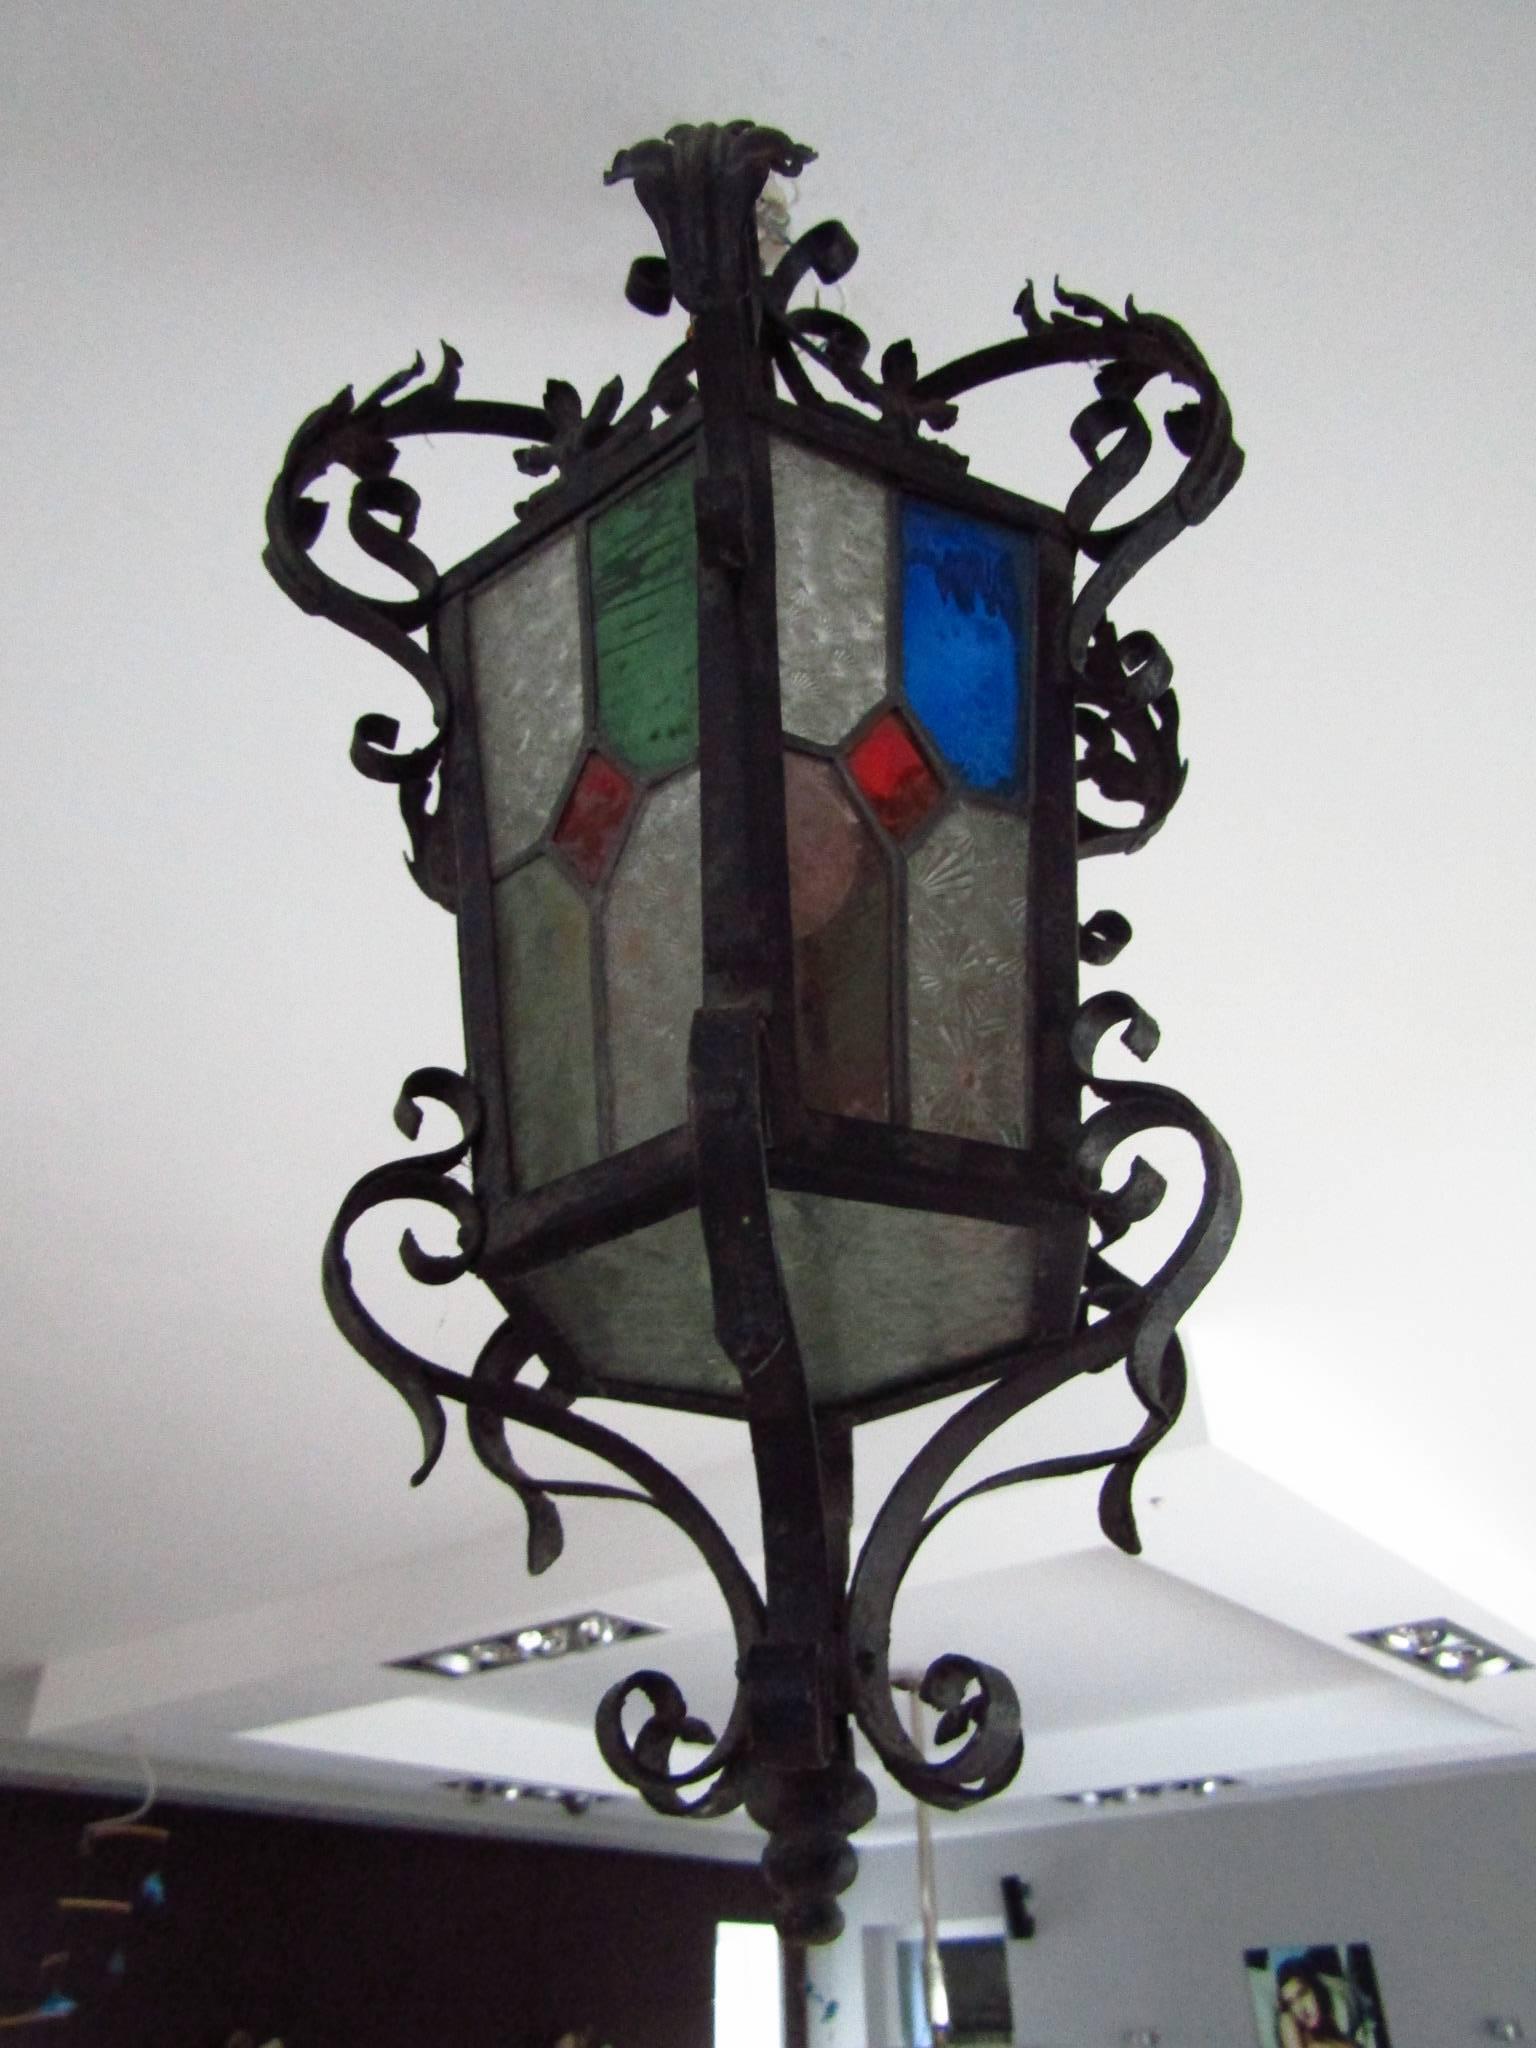 Jugendstil Arts and Crafts Art Nouveau Chandelier Pendant Light Fixture 4